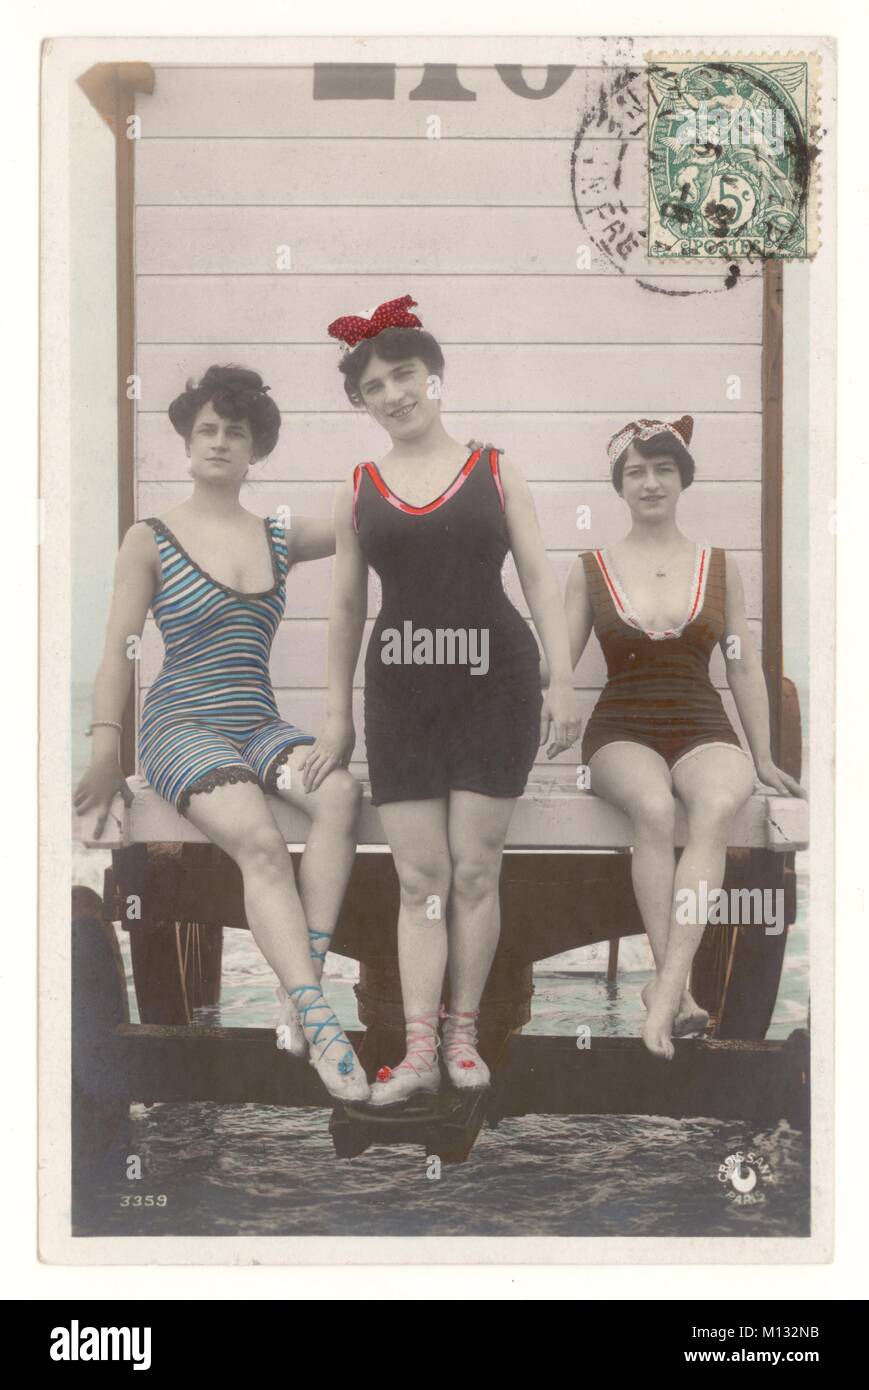 Edwardianische getönte Postkarte von Badenden auf einer Badehütte, abgeschickt aus Dieppe, N. France, ca. 1907 Retro Beach Fotopostkarte. Stockfoto